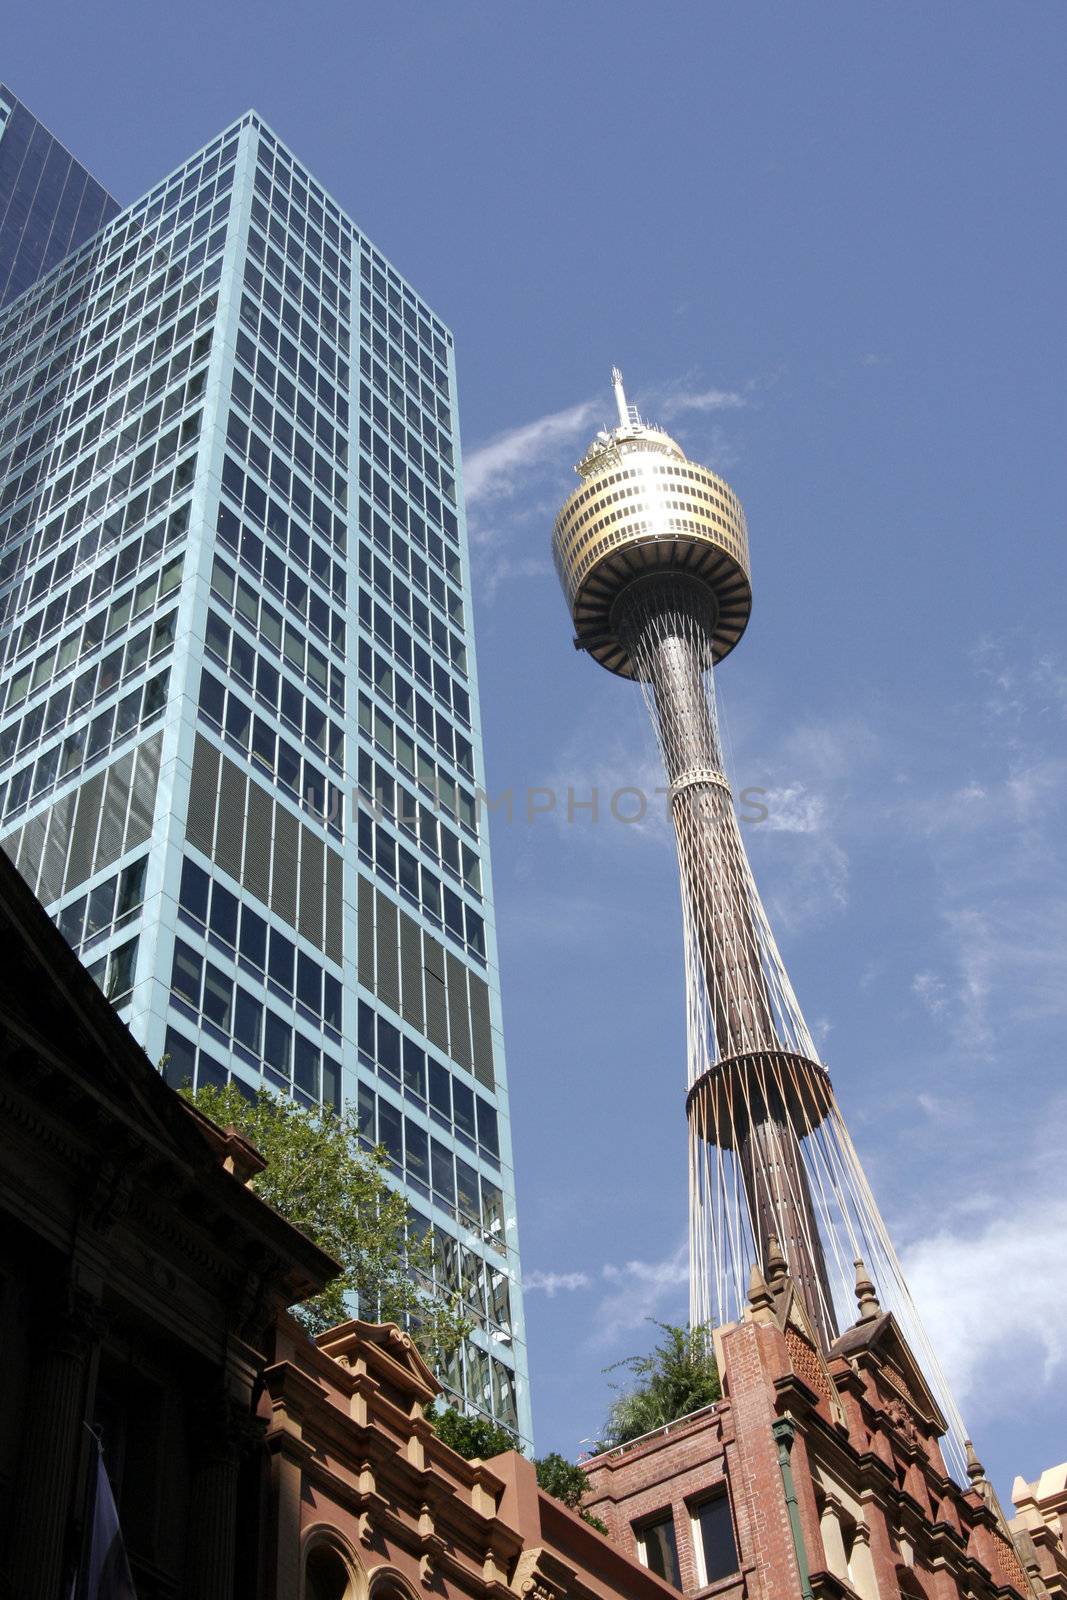 Sydney Tower by thorsten